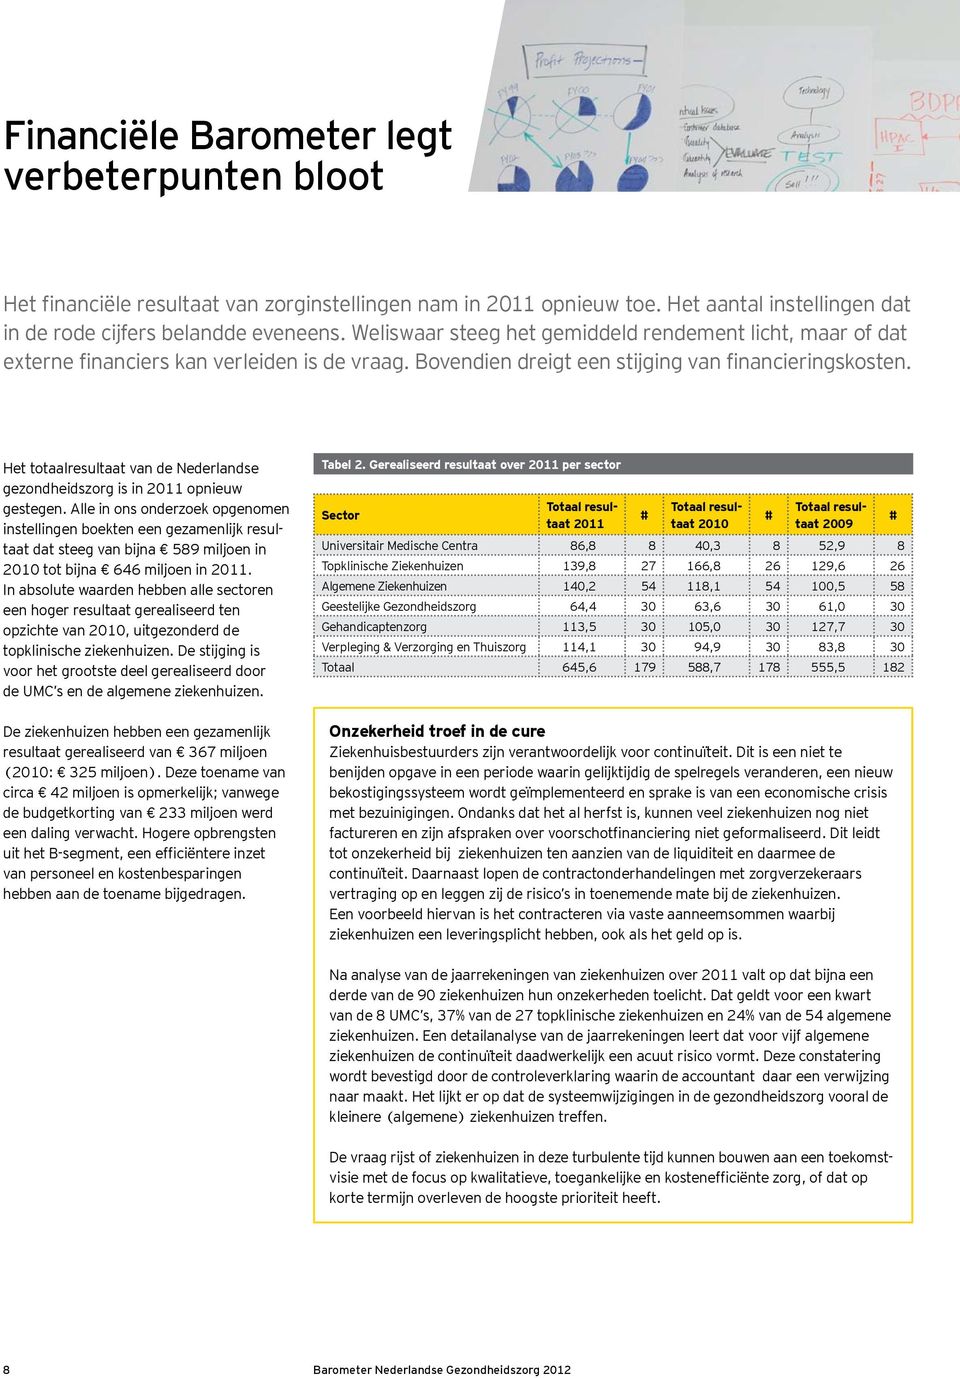 Het totaalresultaat van de Nederlandse gezondheidszorg is in 2011 opnieuw gestegen.